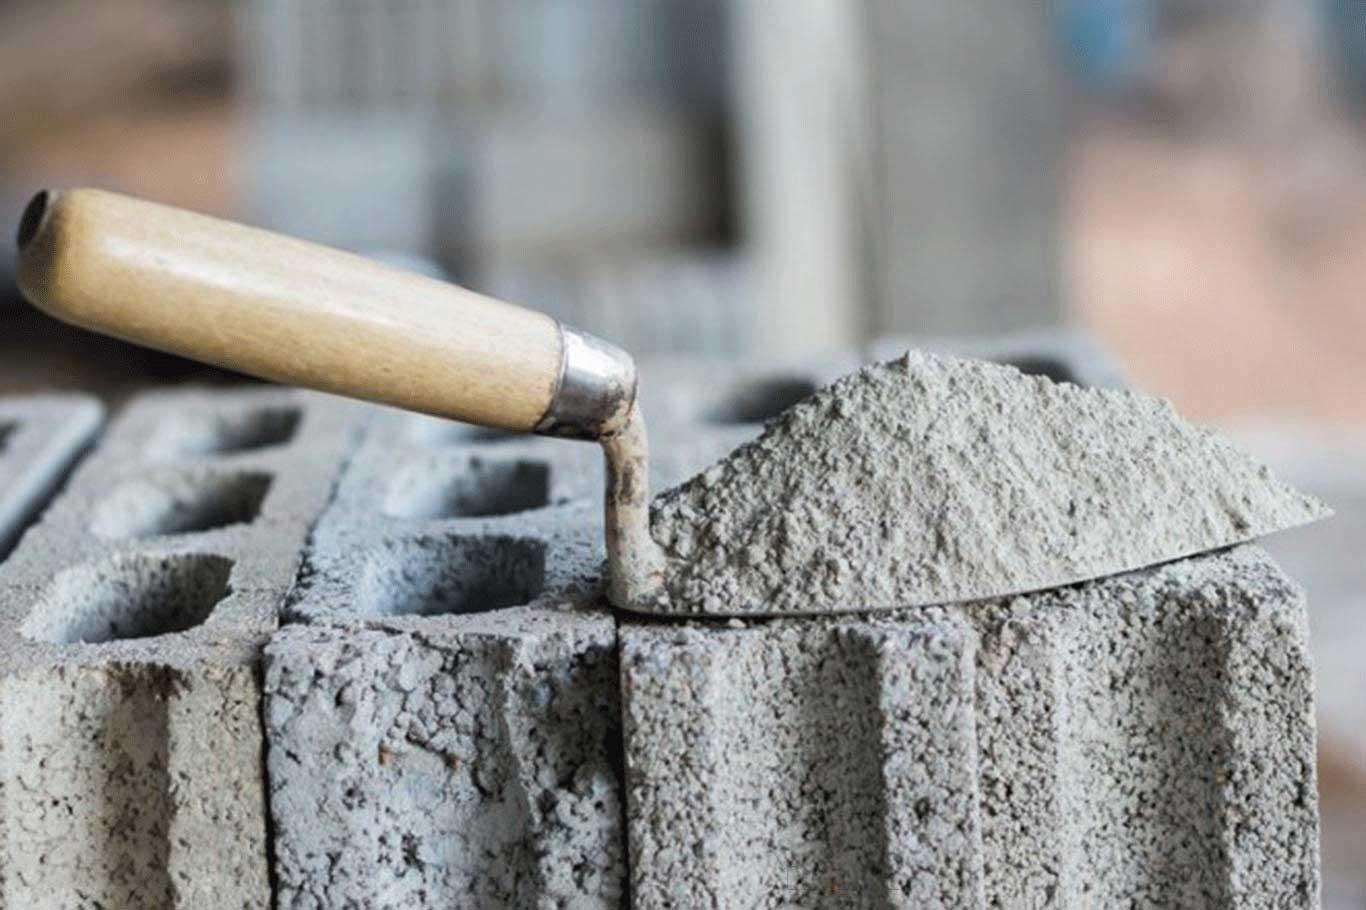 Çimento sektöründe iç satışlar düşüyor, ihracat artıyor